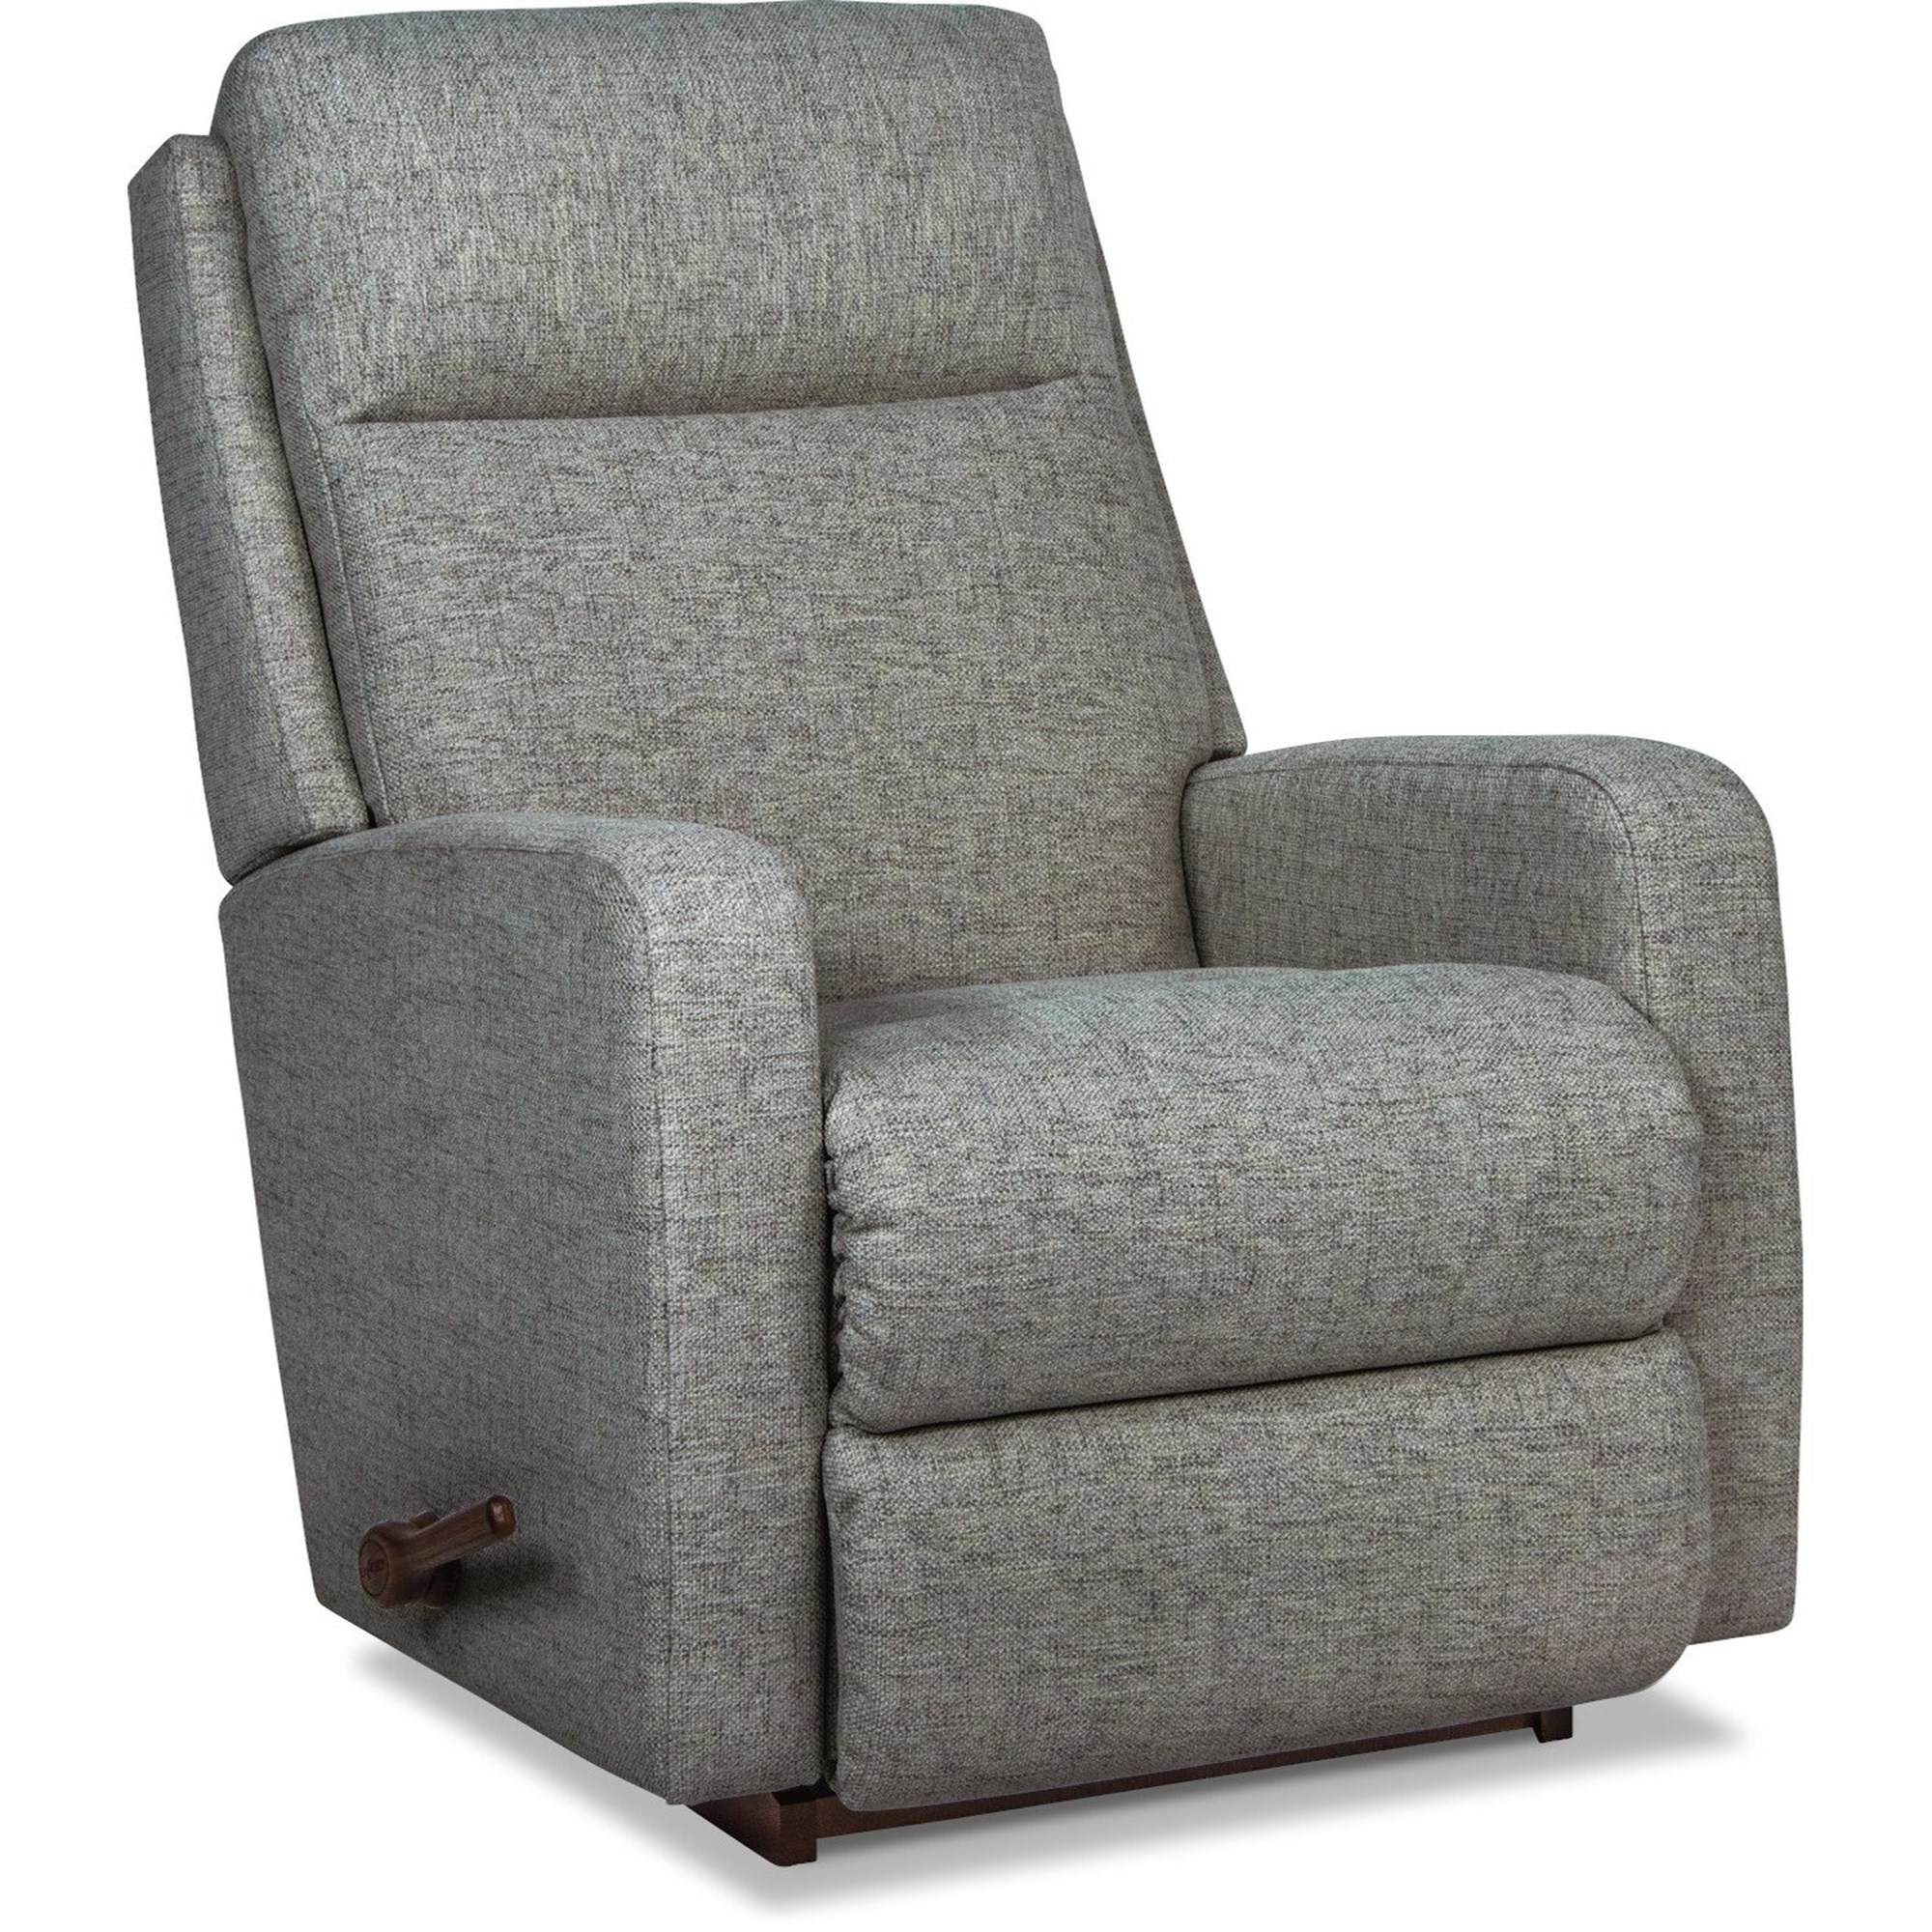 A Review of La-Z-Boy's Chair and Sofa Seat Cushions - La-Z-Boy of Ottawa /  Kingston